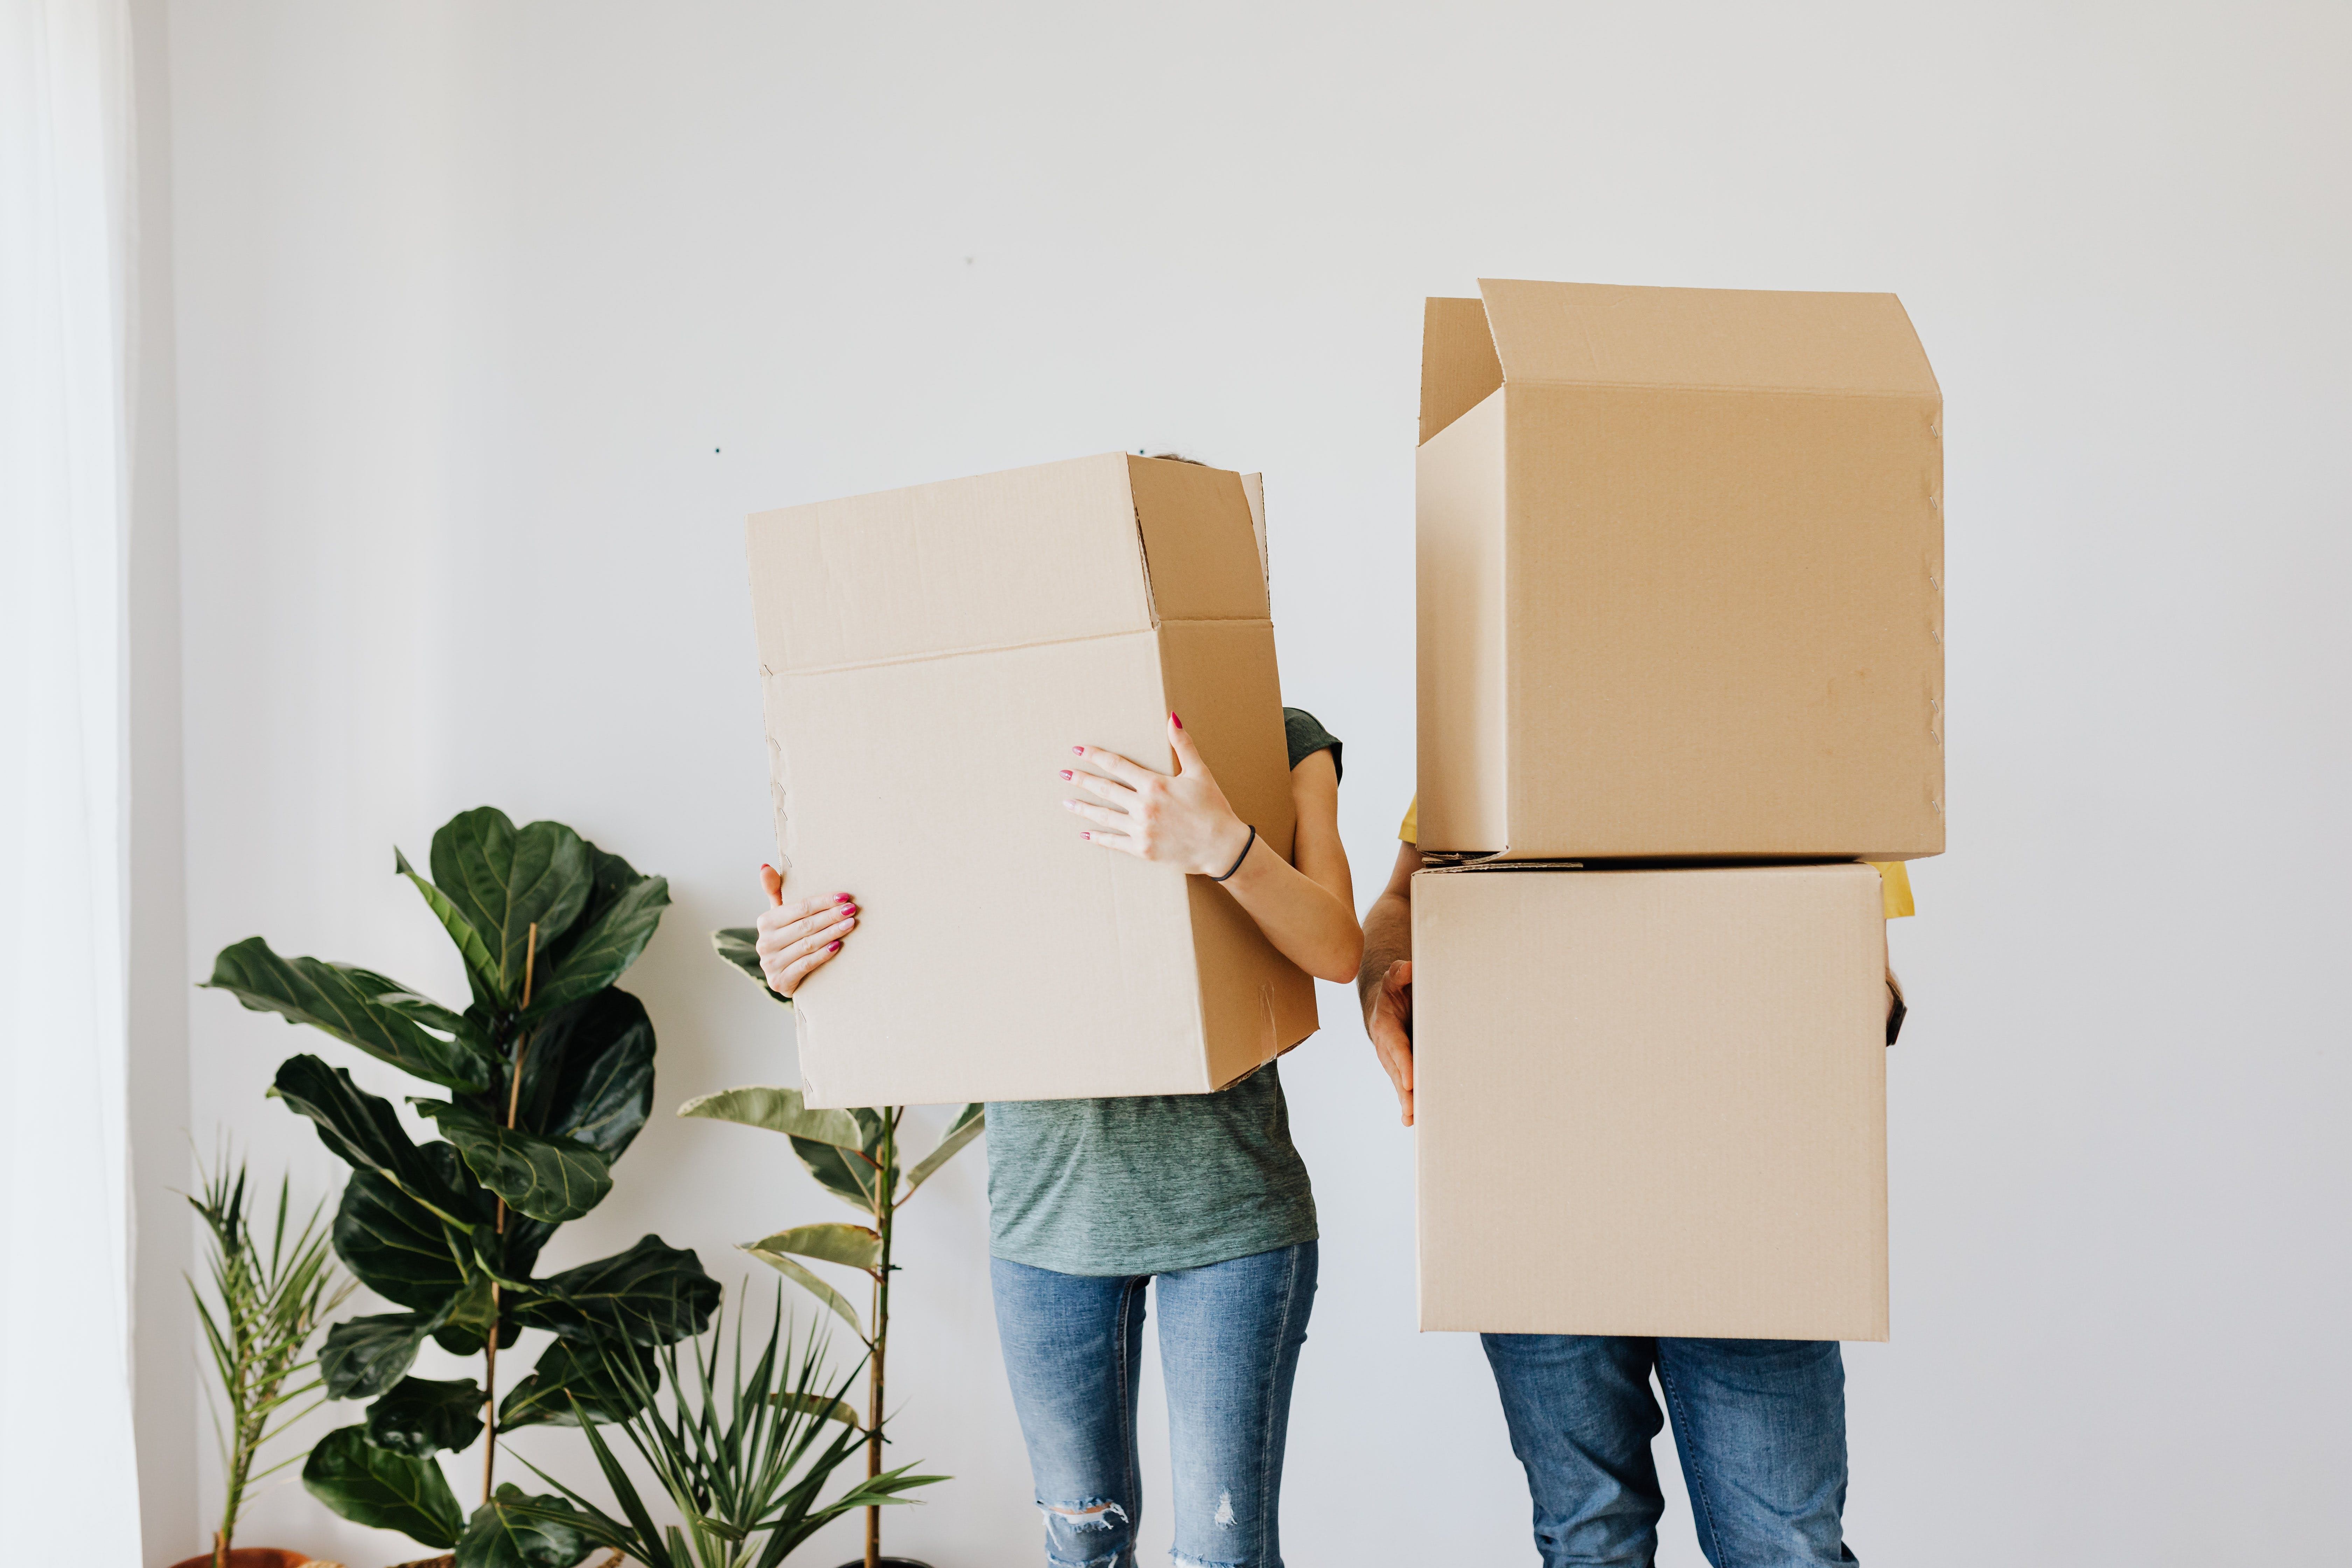 Des personnes transportant des cartons de déménagement | Source : Pexels